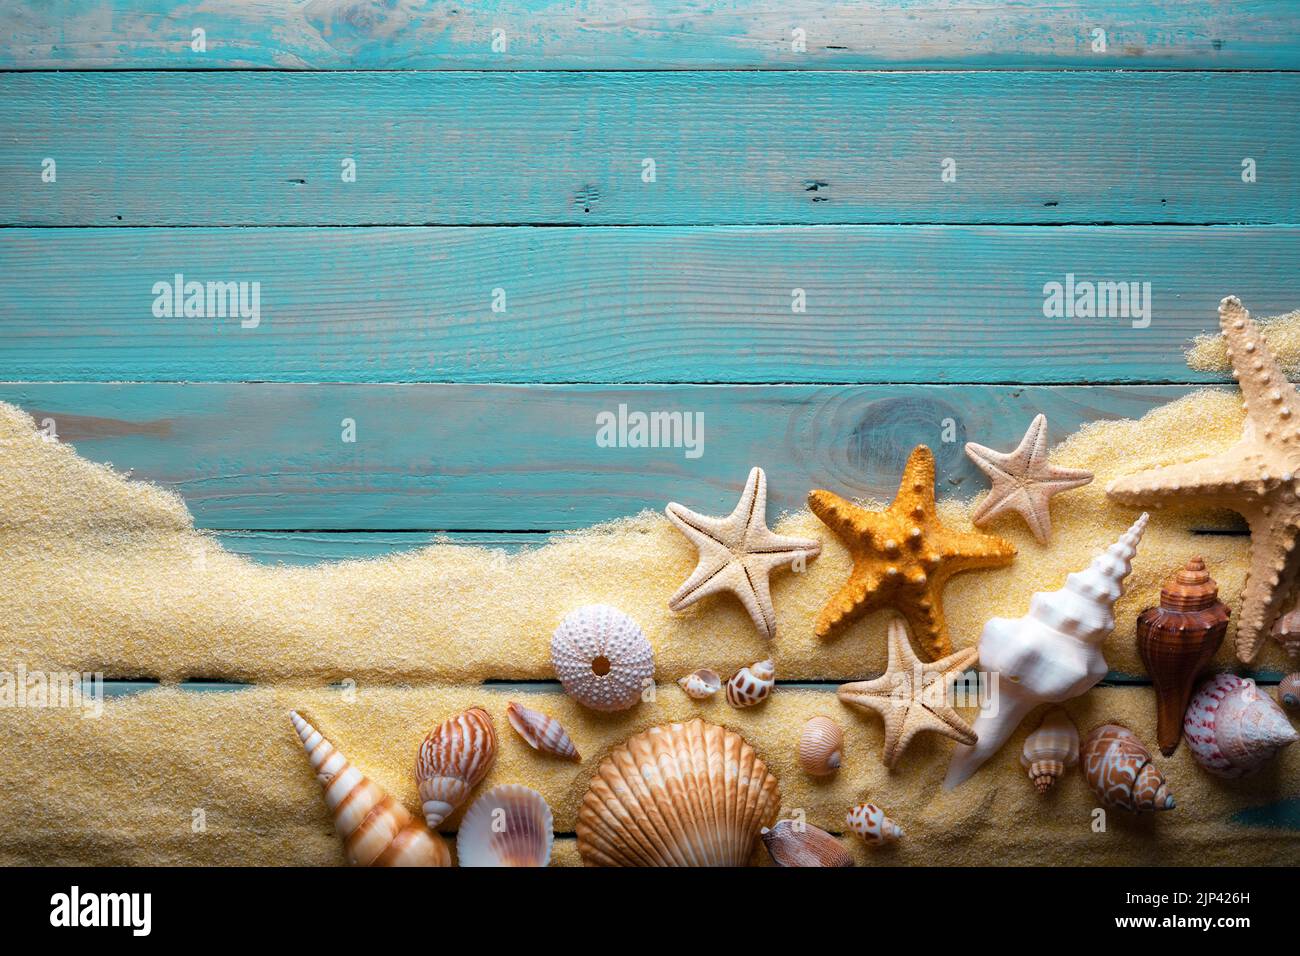 Concepto de vacaciones y verano con estrellas de mar y conchas sobre una mesa de madera turquesa con arena Foto de stock